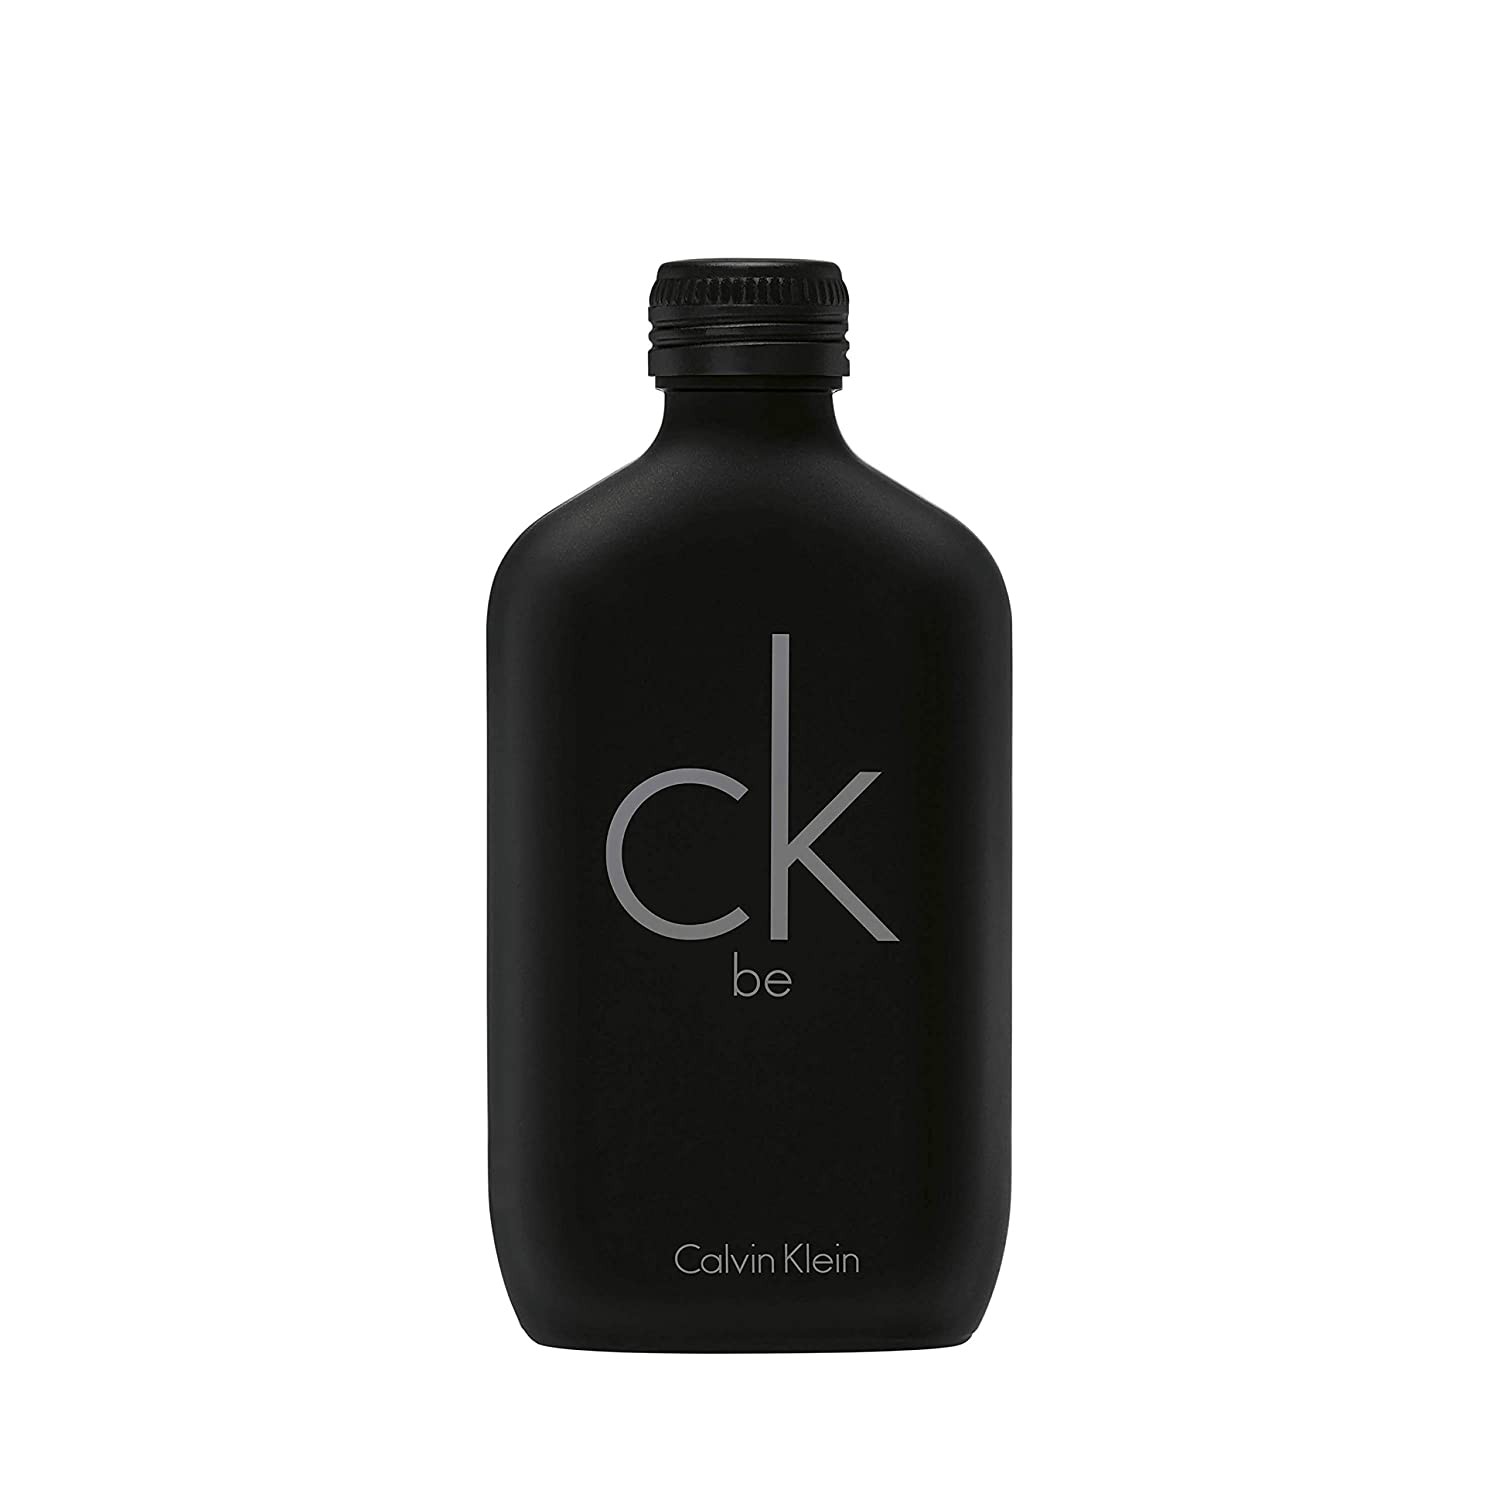 Image of Calvin Klein CK Be Unisex Eau de Toilette Spray (50ml)